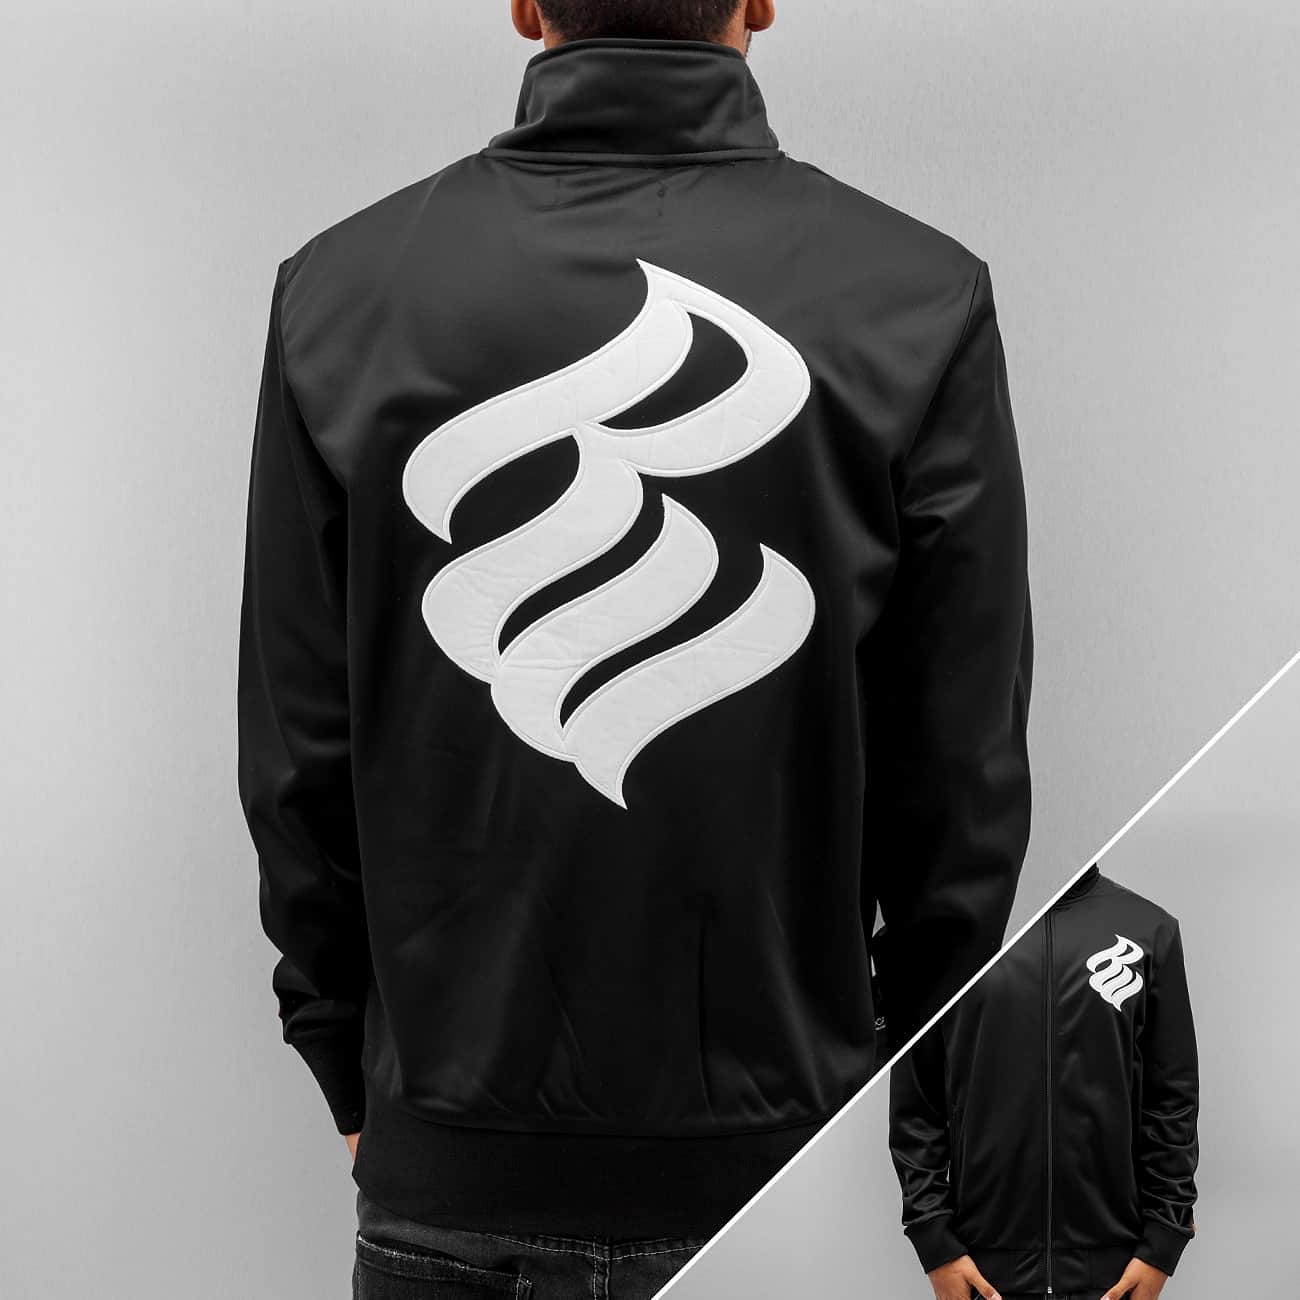 Rocawear Logo - roca wear jogger, Rocawear Jacket / Lightweight Logo In Black Men